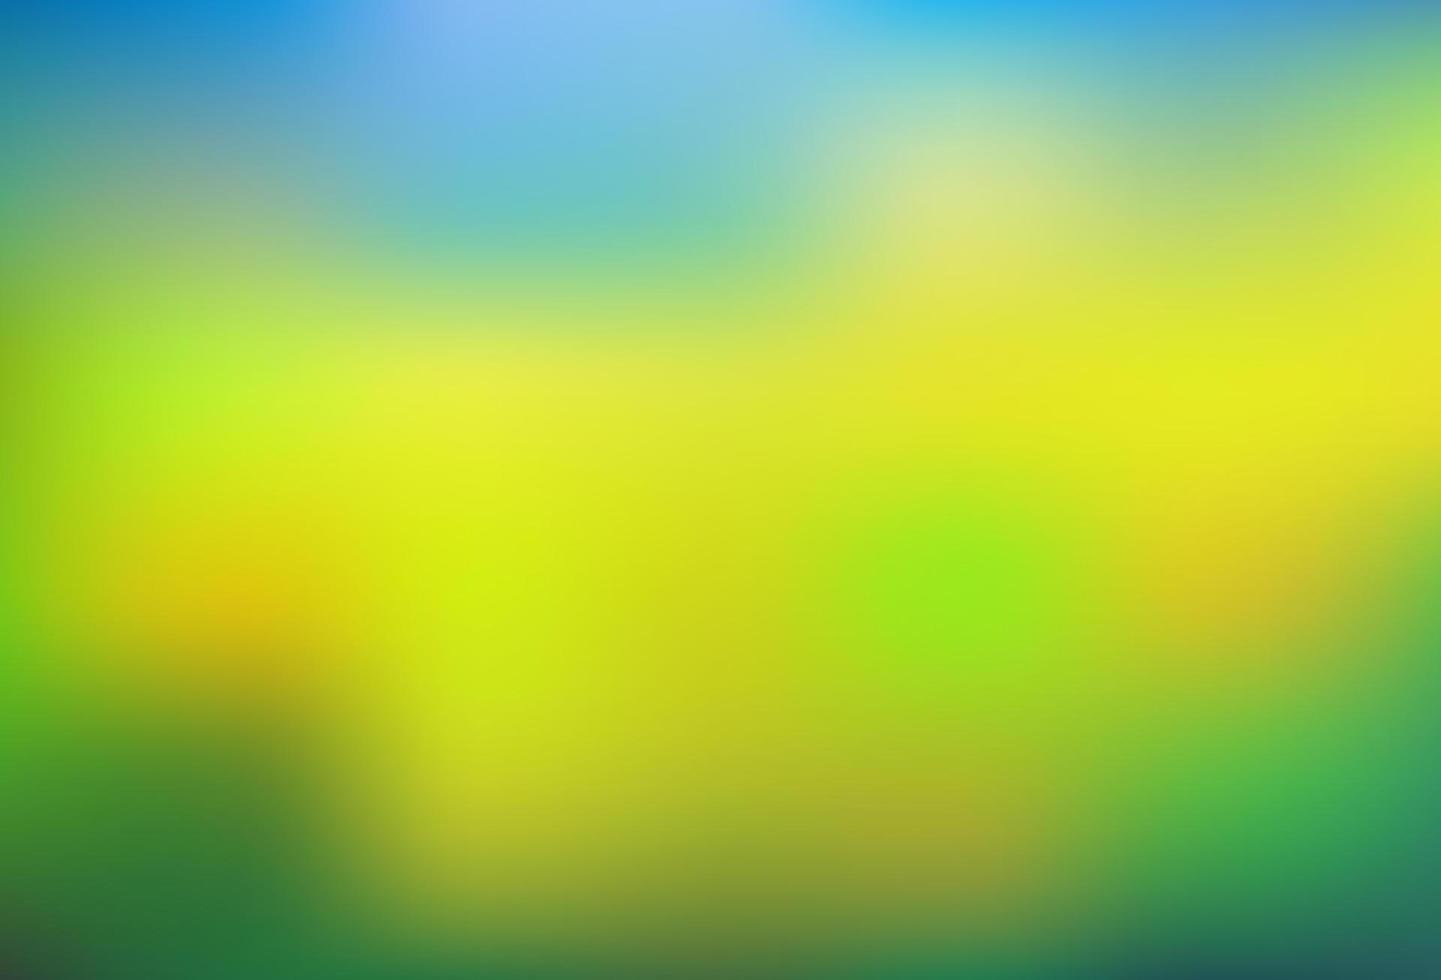 Dark Blue, Yellow vector blurred bright background.